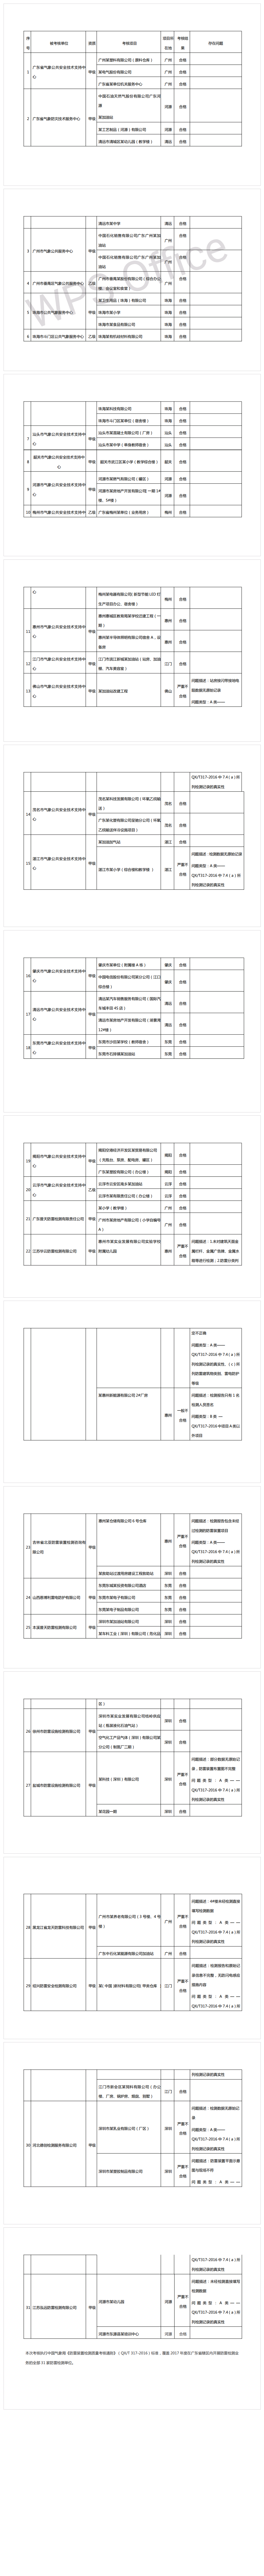 广东省2018年防雷装置检测质量考核结果.png